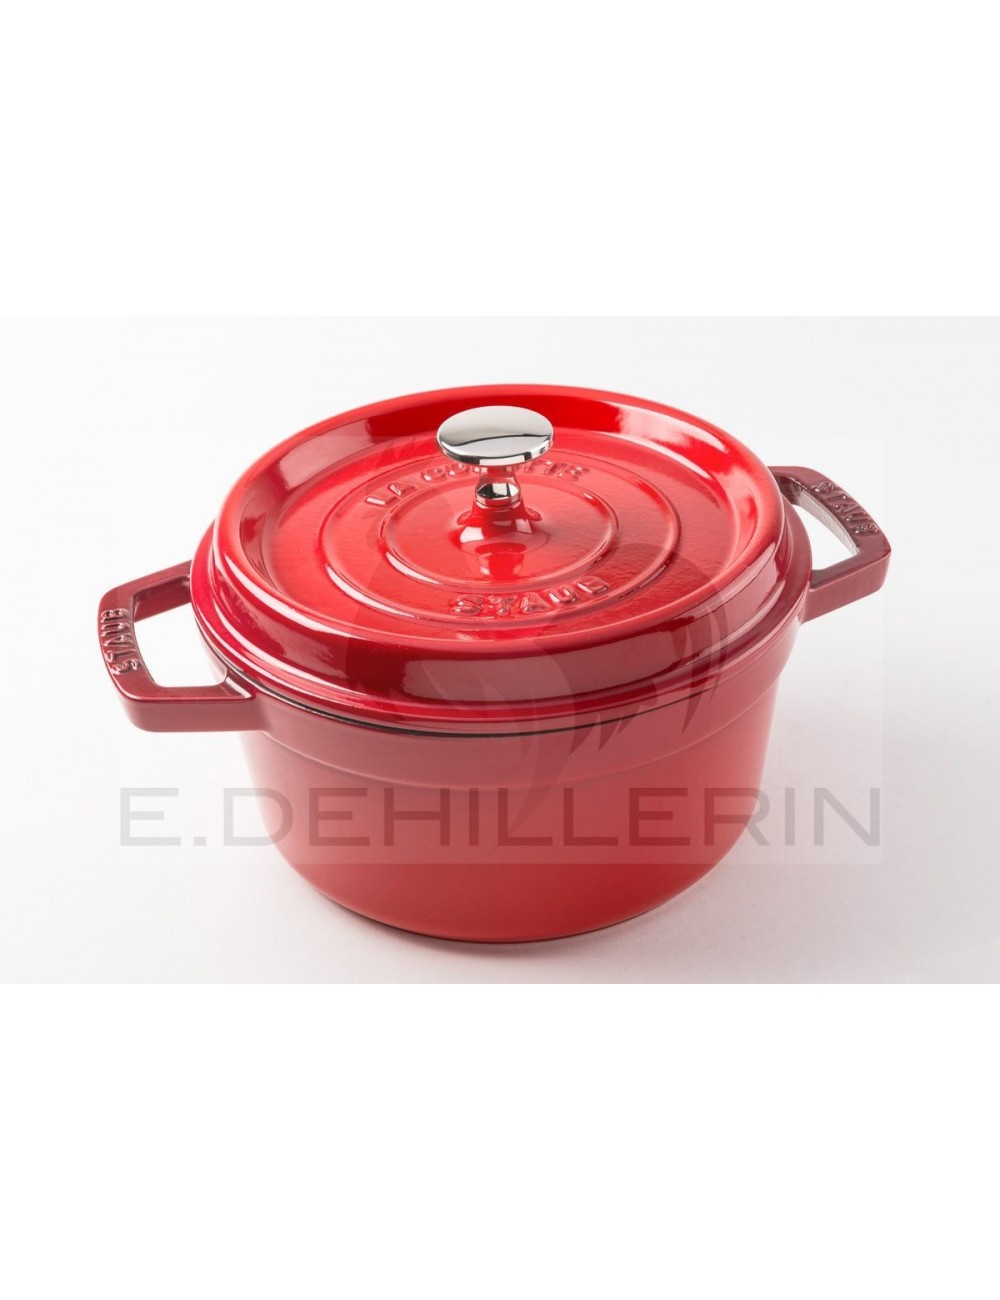 Le Creuset cast-iron saucepan 18 cm, 1,4L red